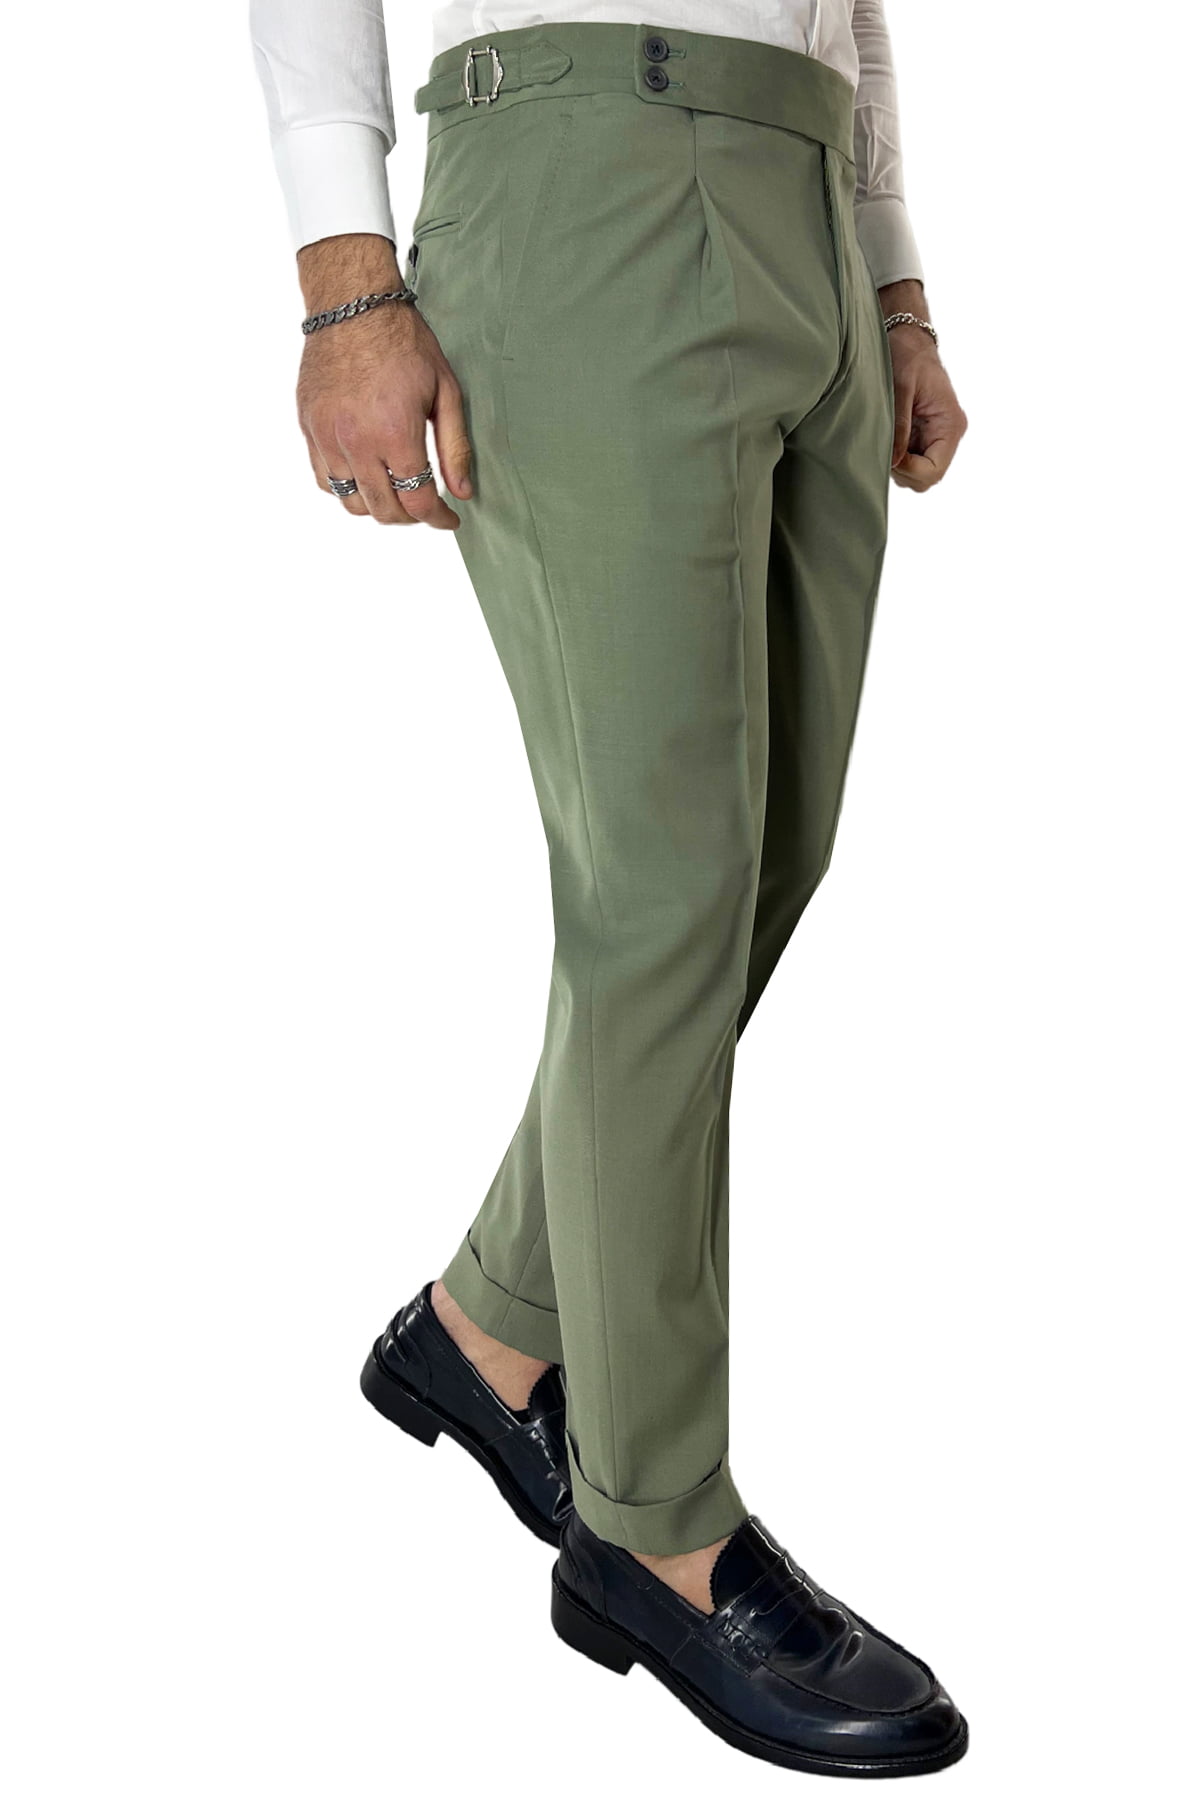 Abito uomo monopetto verde chiaro in fresco lana con pantalone vita alta